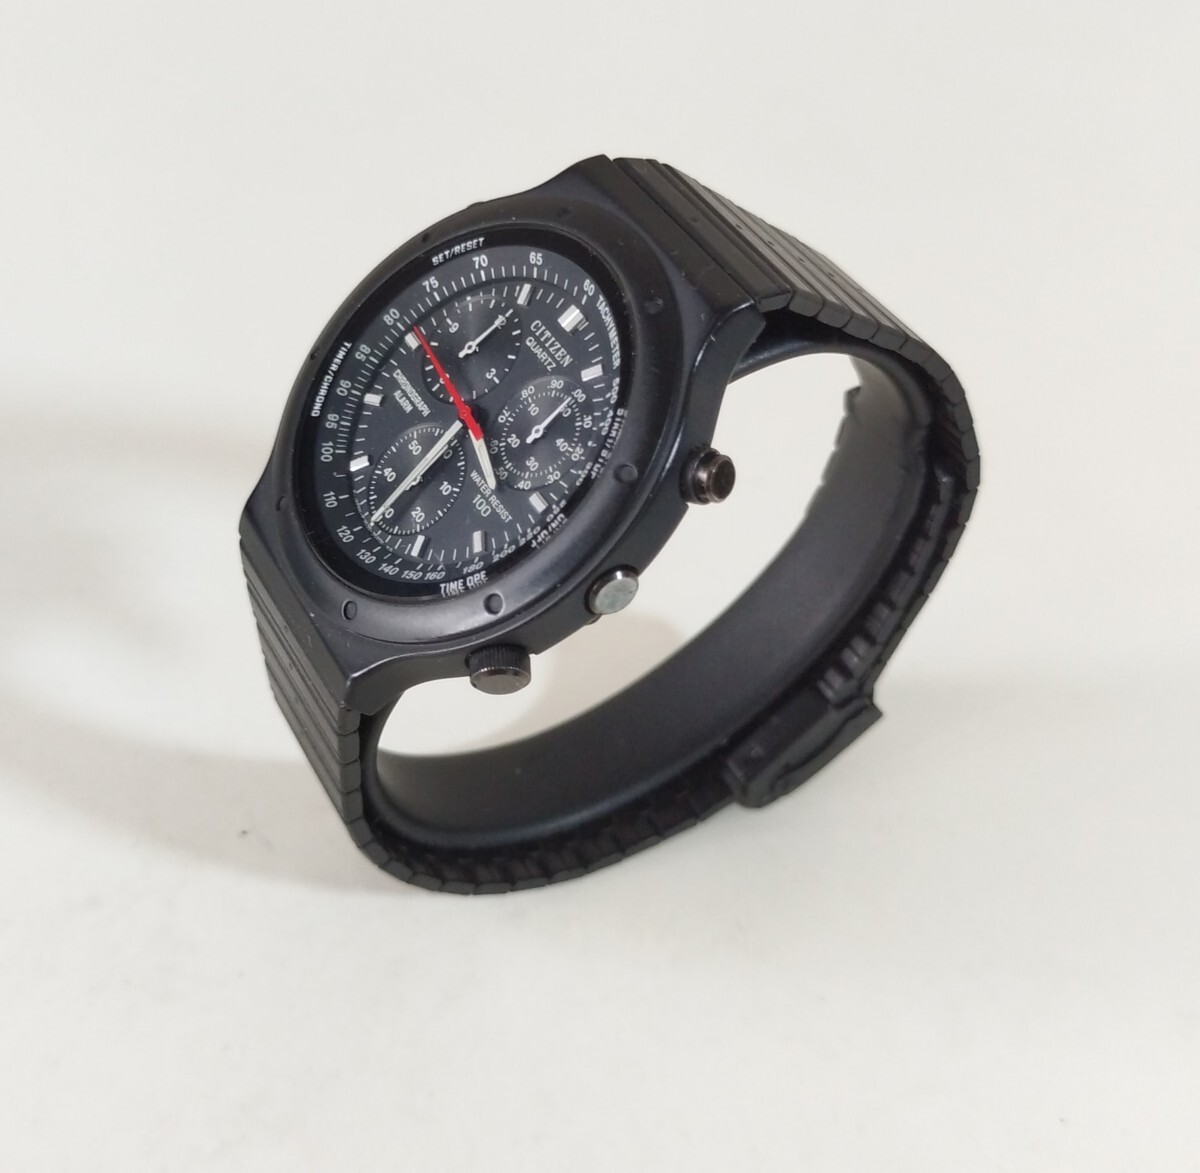  Junk CITIZEN Citizen s Porte RS quartz chronograph alarm wristwatch black 